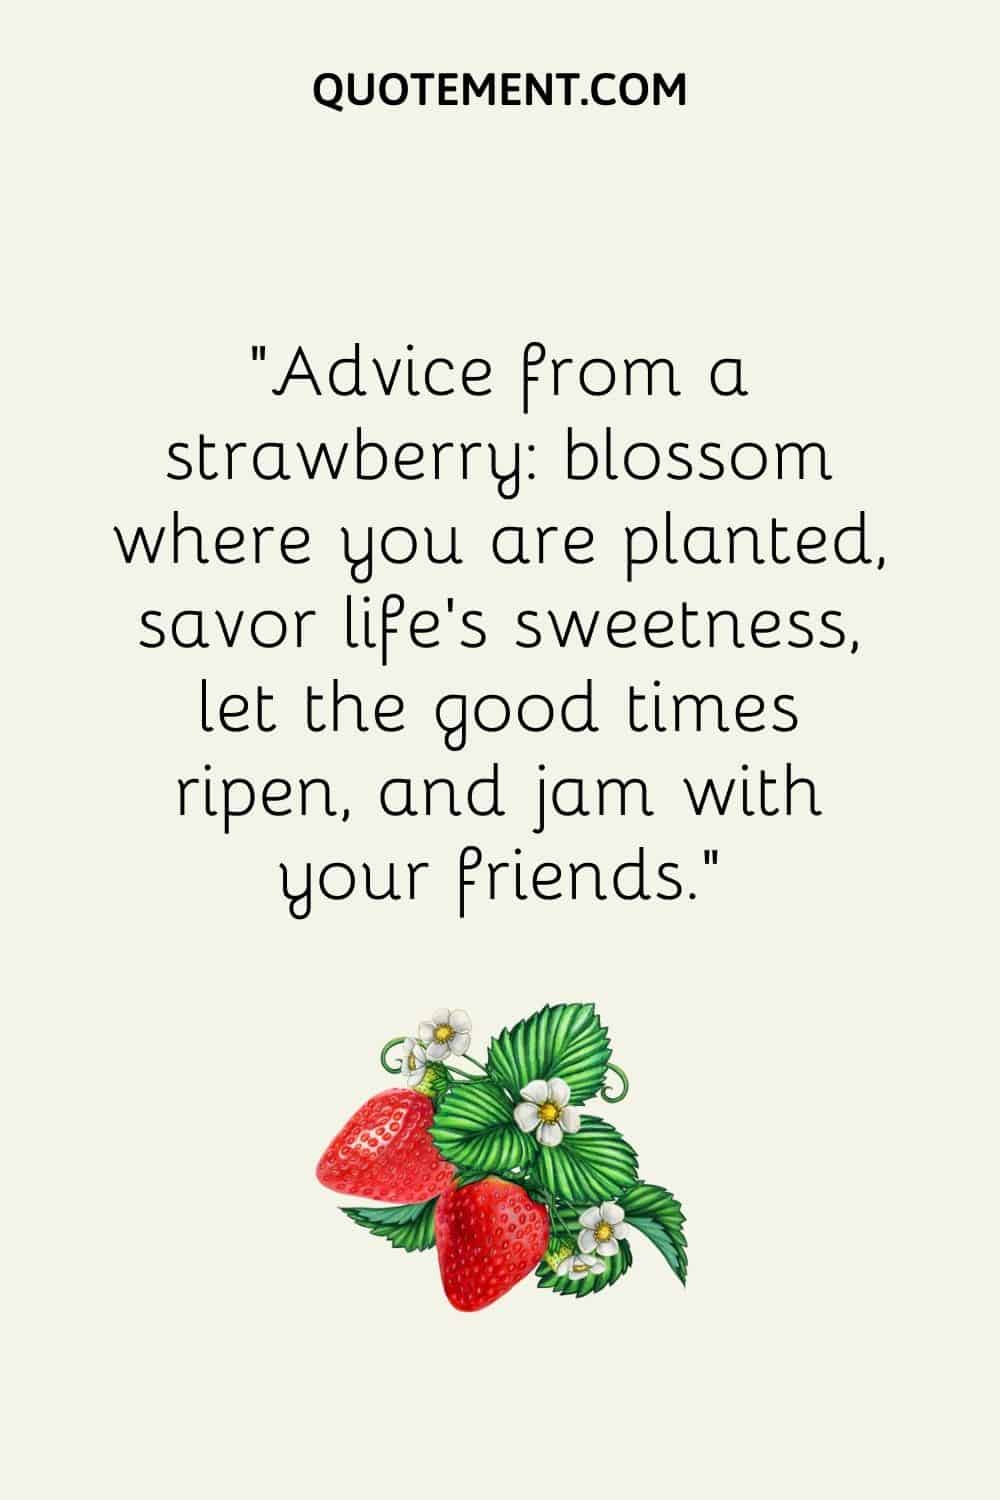 Consejo de una flor de fresa donde estás plantada, saborea la dulzura de la vida, deja que maduren los buenos momentos y haz mermelada con tus amigos